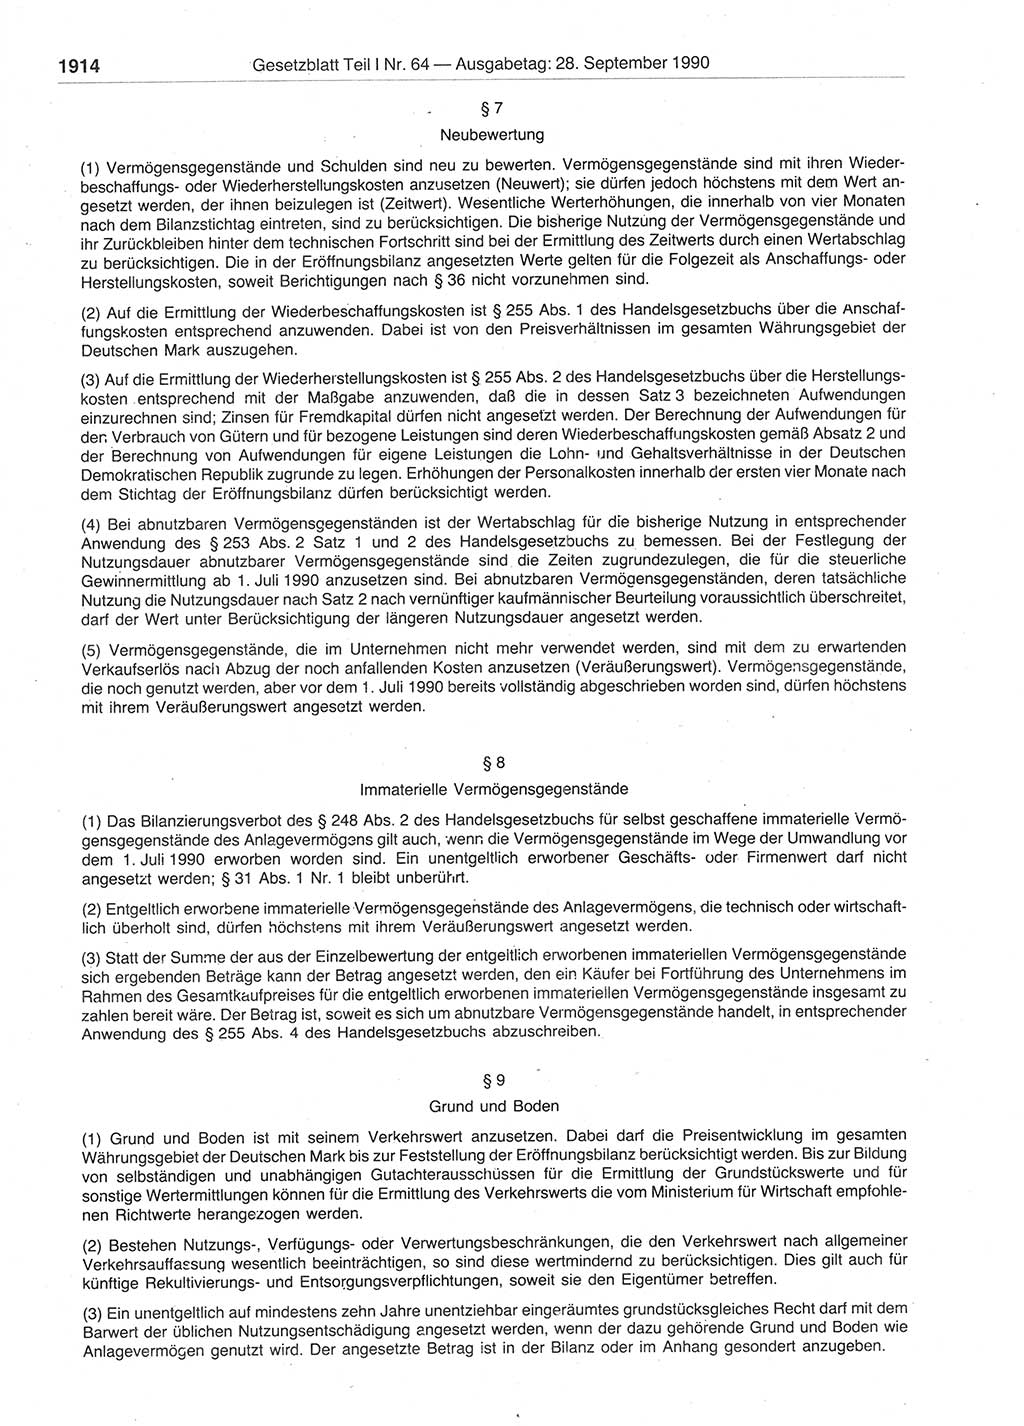 Gesetzblatt (GBl.) der Deutschen Demokratischen Republik (DDR) Teil Ⅰ 1990, Seite 1914 (GBl. DDR Ⅰ 1990, S. 1914)